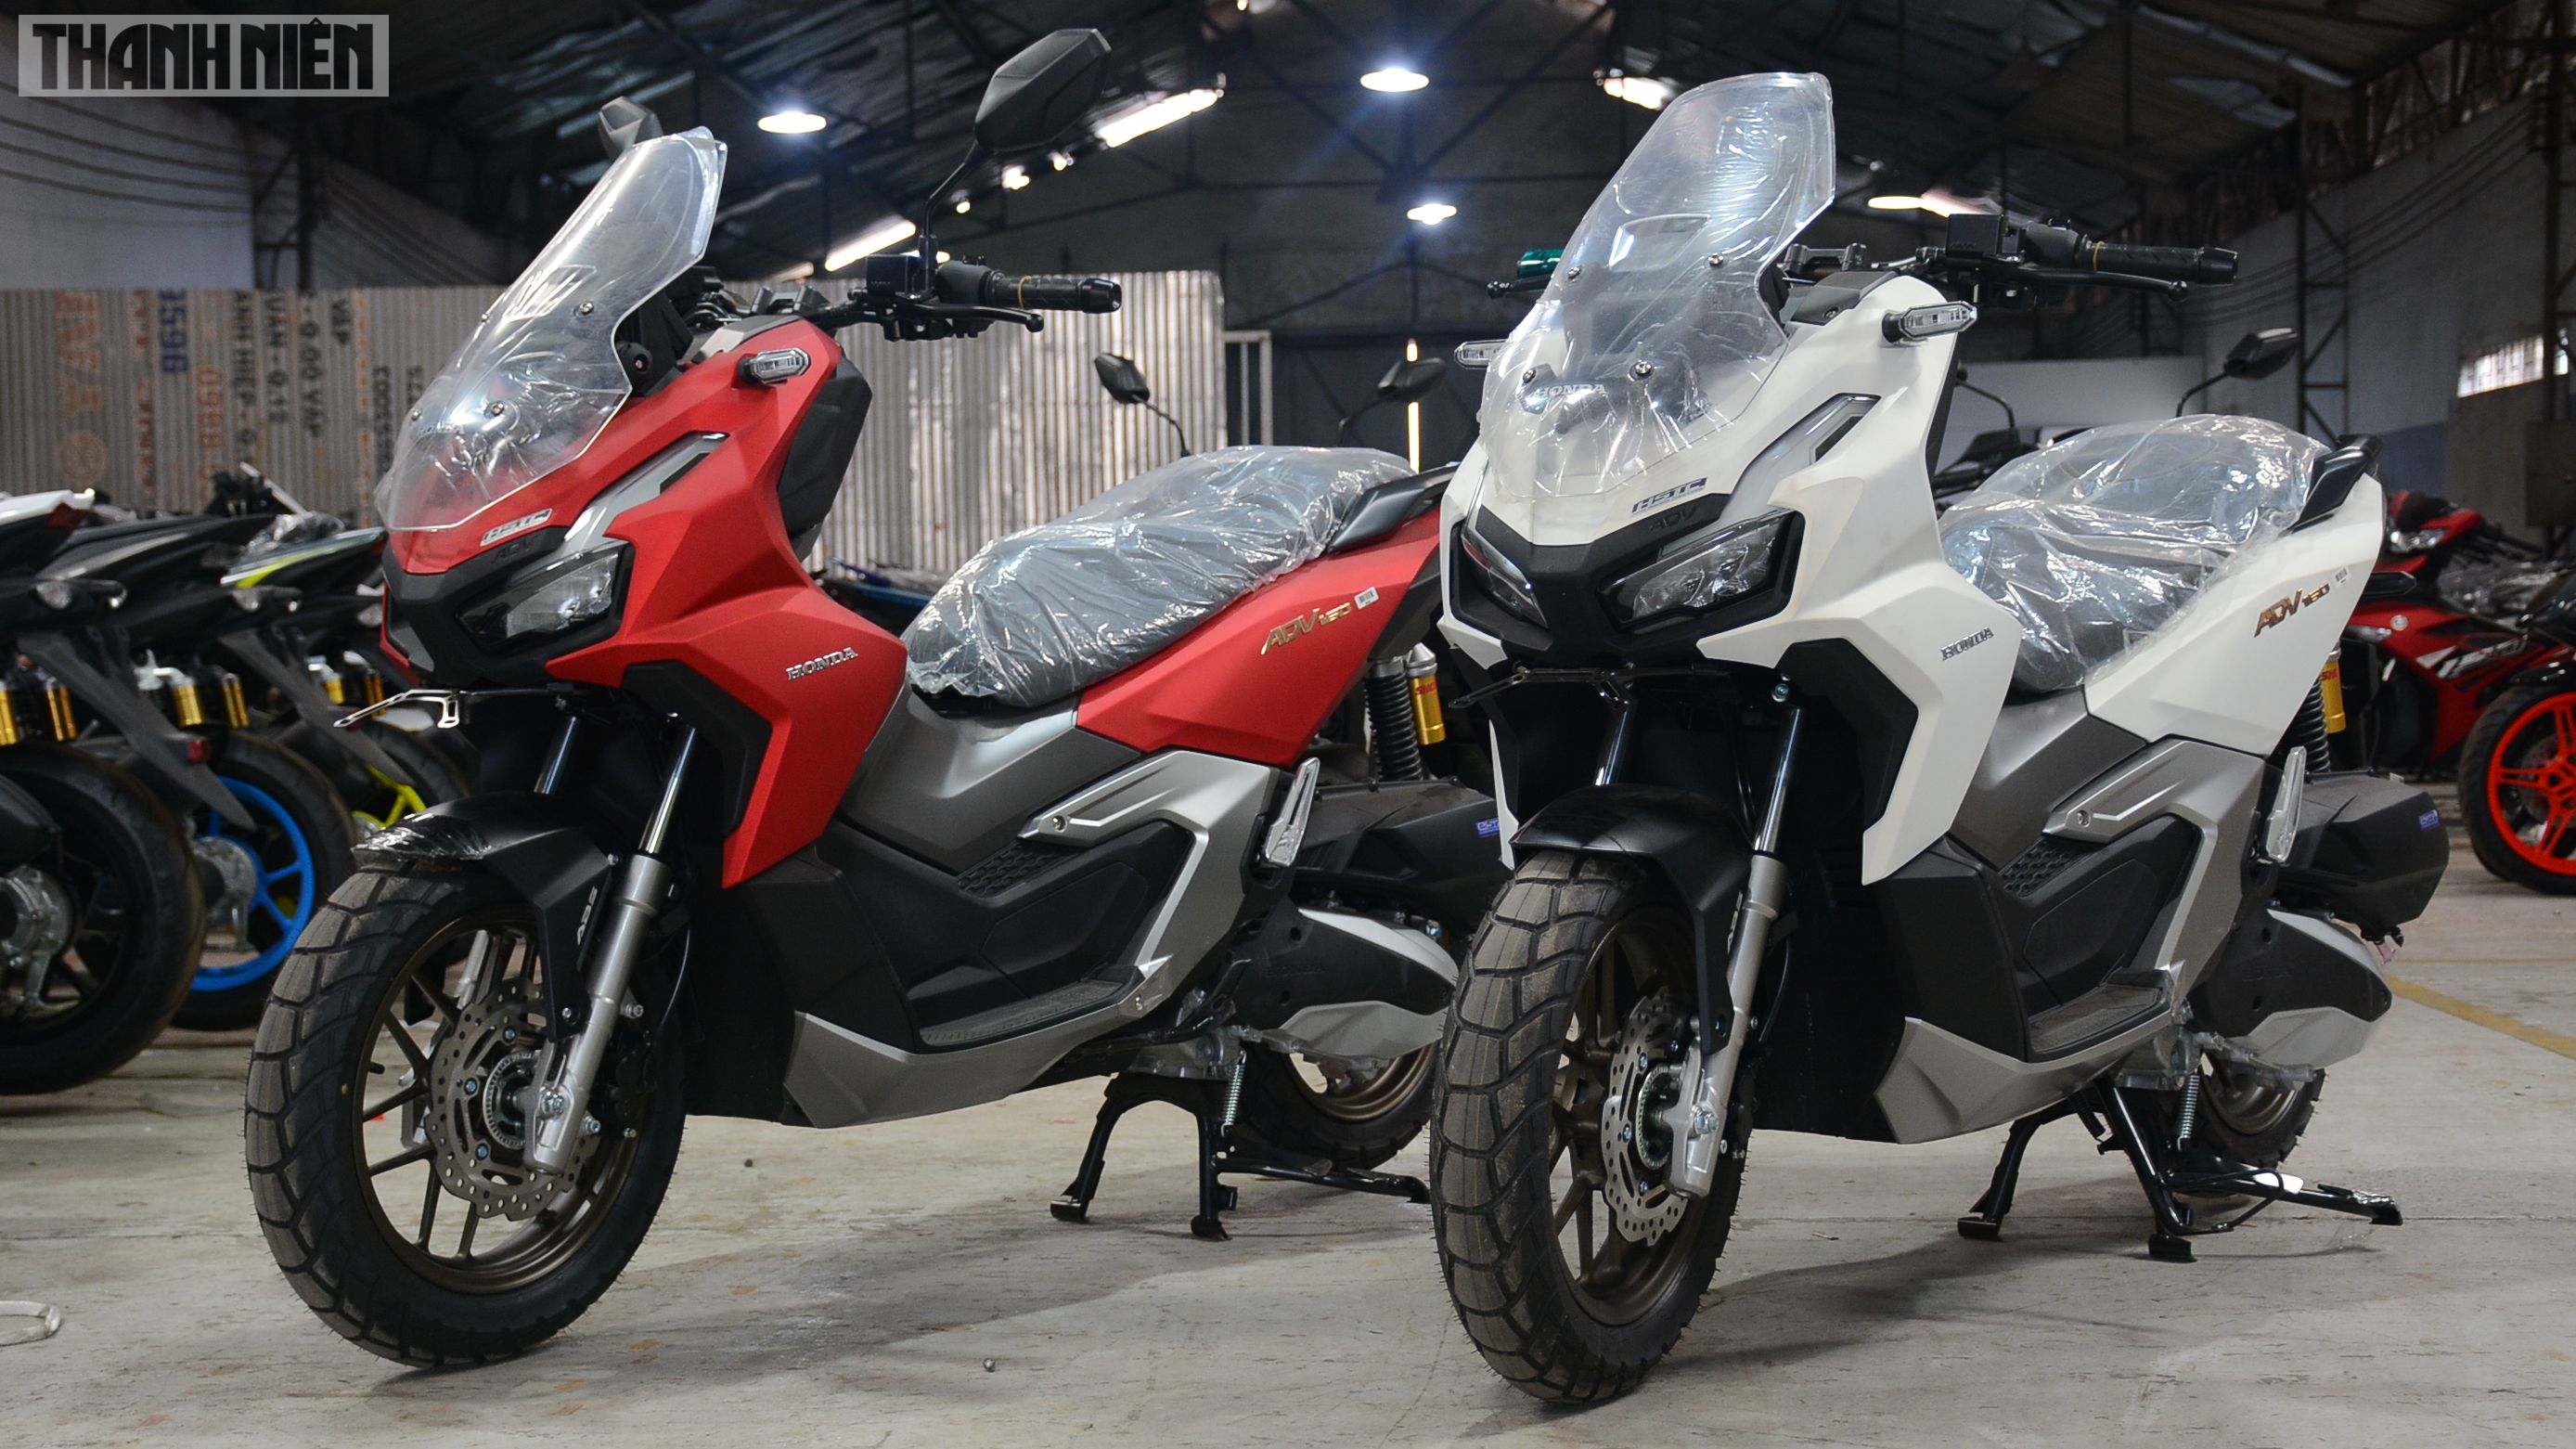 Cận cảnh mẫu xe máy địa hình Honda CRF300L có giá hơn 200 triệu đồng   AutoFun